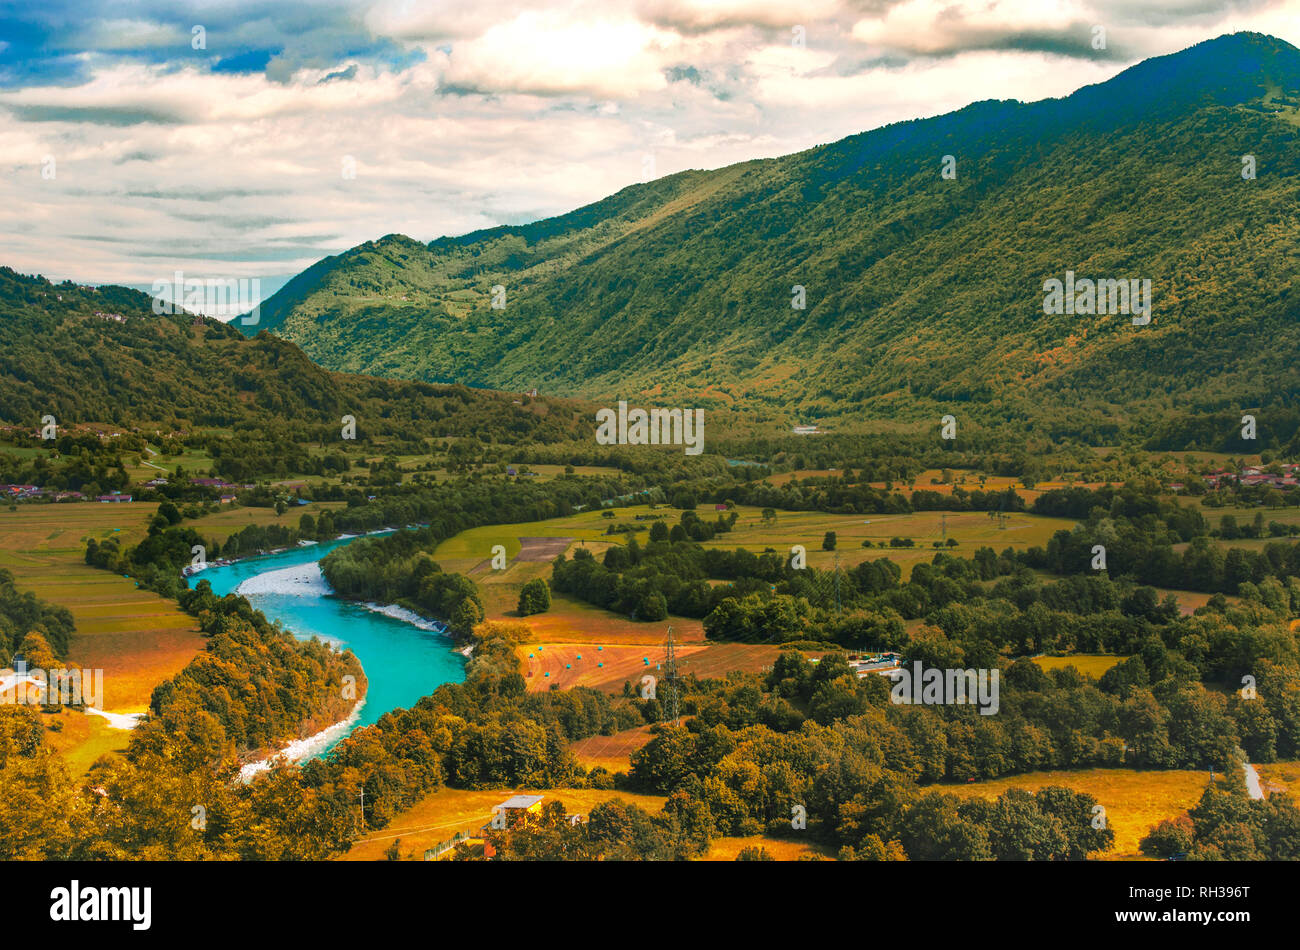 La vallée de la rivière Soca Isonzo sarcelle jaune et orange coucher de soleil paysage en Slovénie - Italie border Banque D'Images